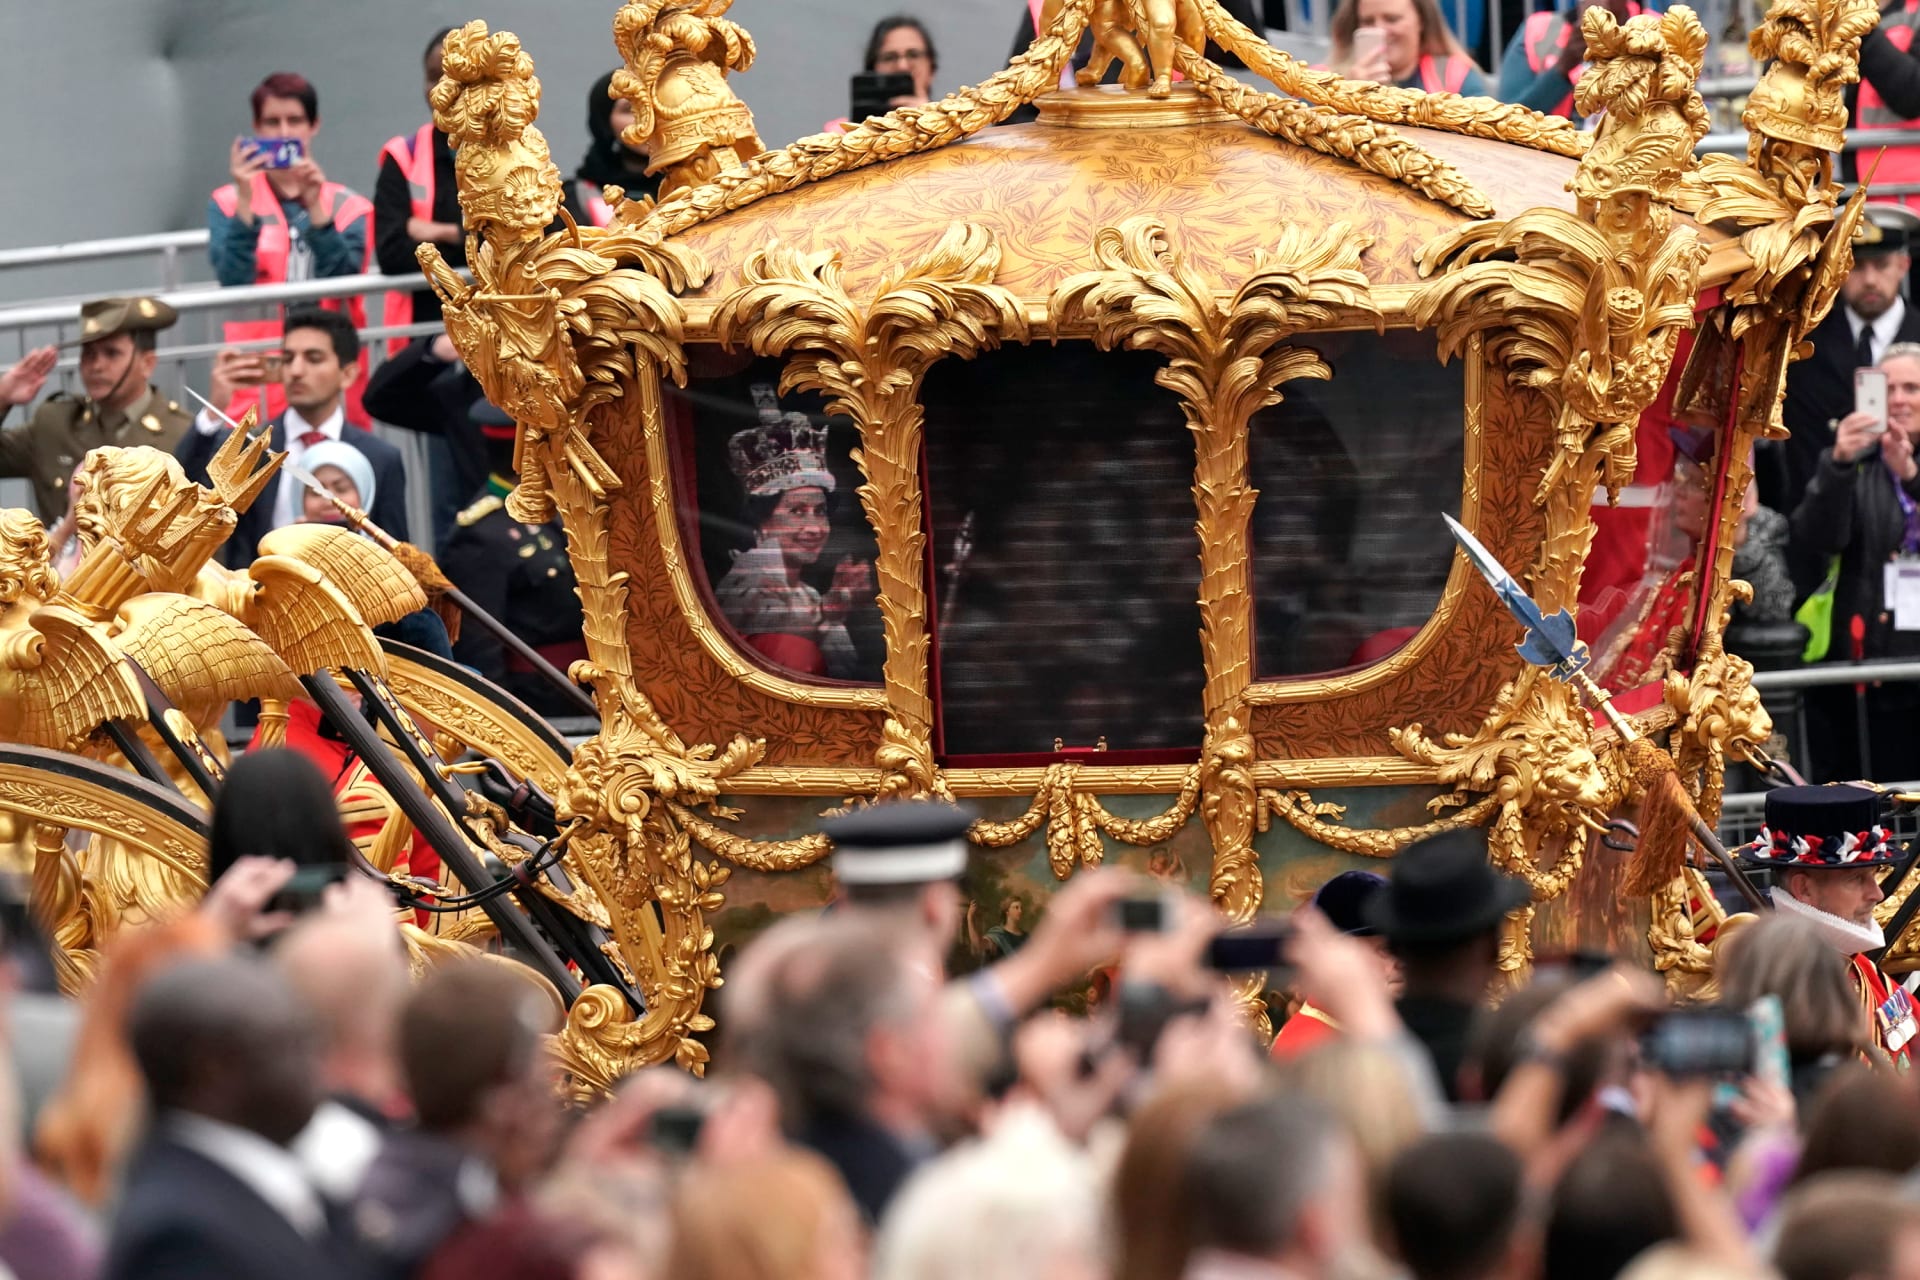 كأنها خرجت من قصة خيالية.. مركبة الملكة إليزابيث الذهبية تظهر في احتفالات اليوبيل البلاتيني 